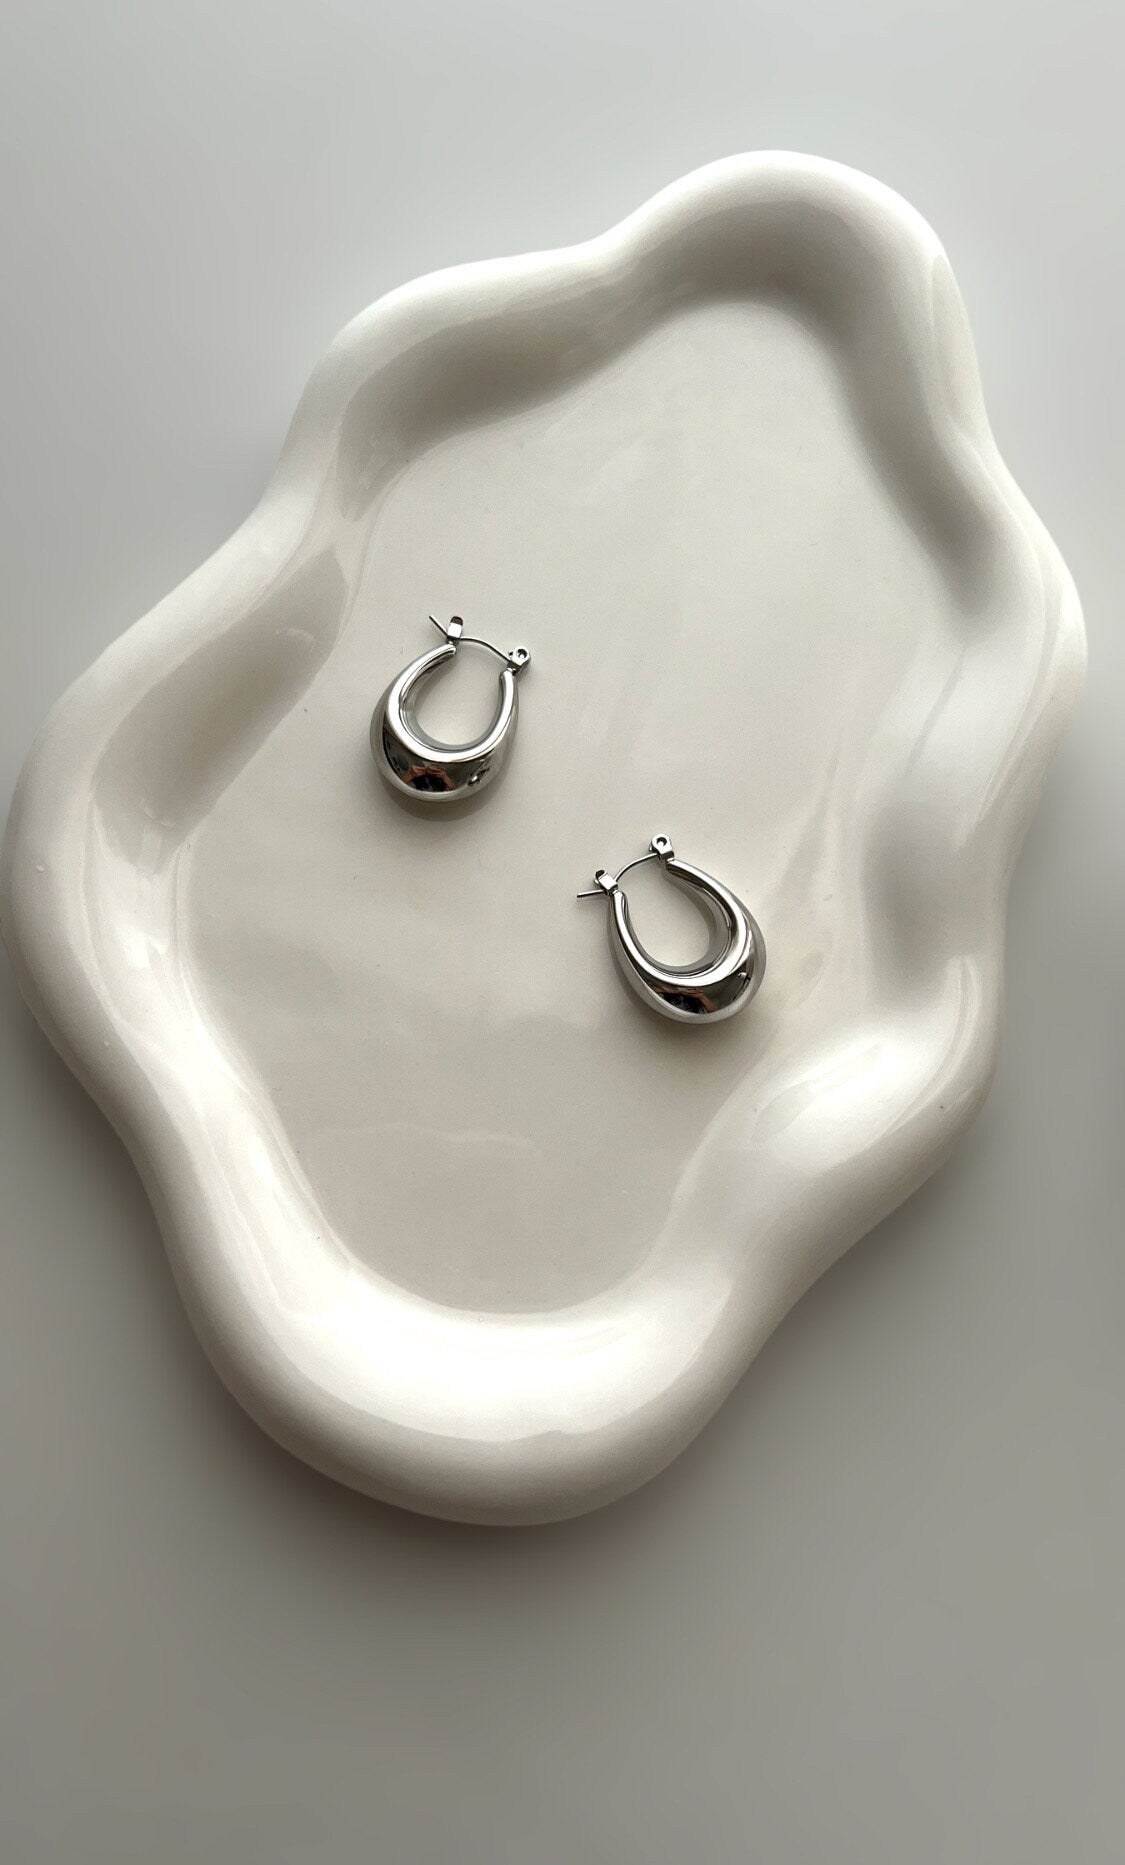 Oval Hollow Hoop Earrings Stainless Steel